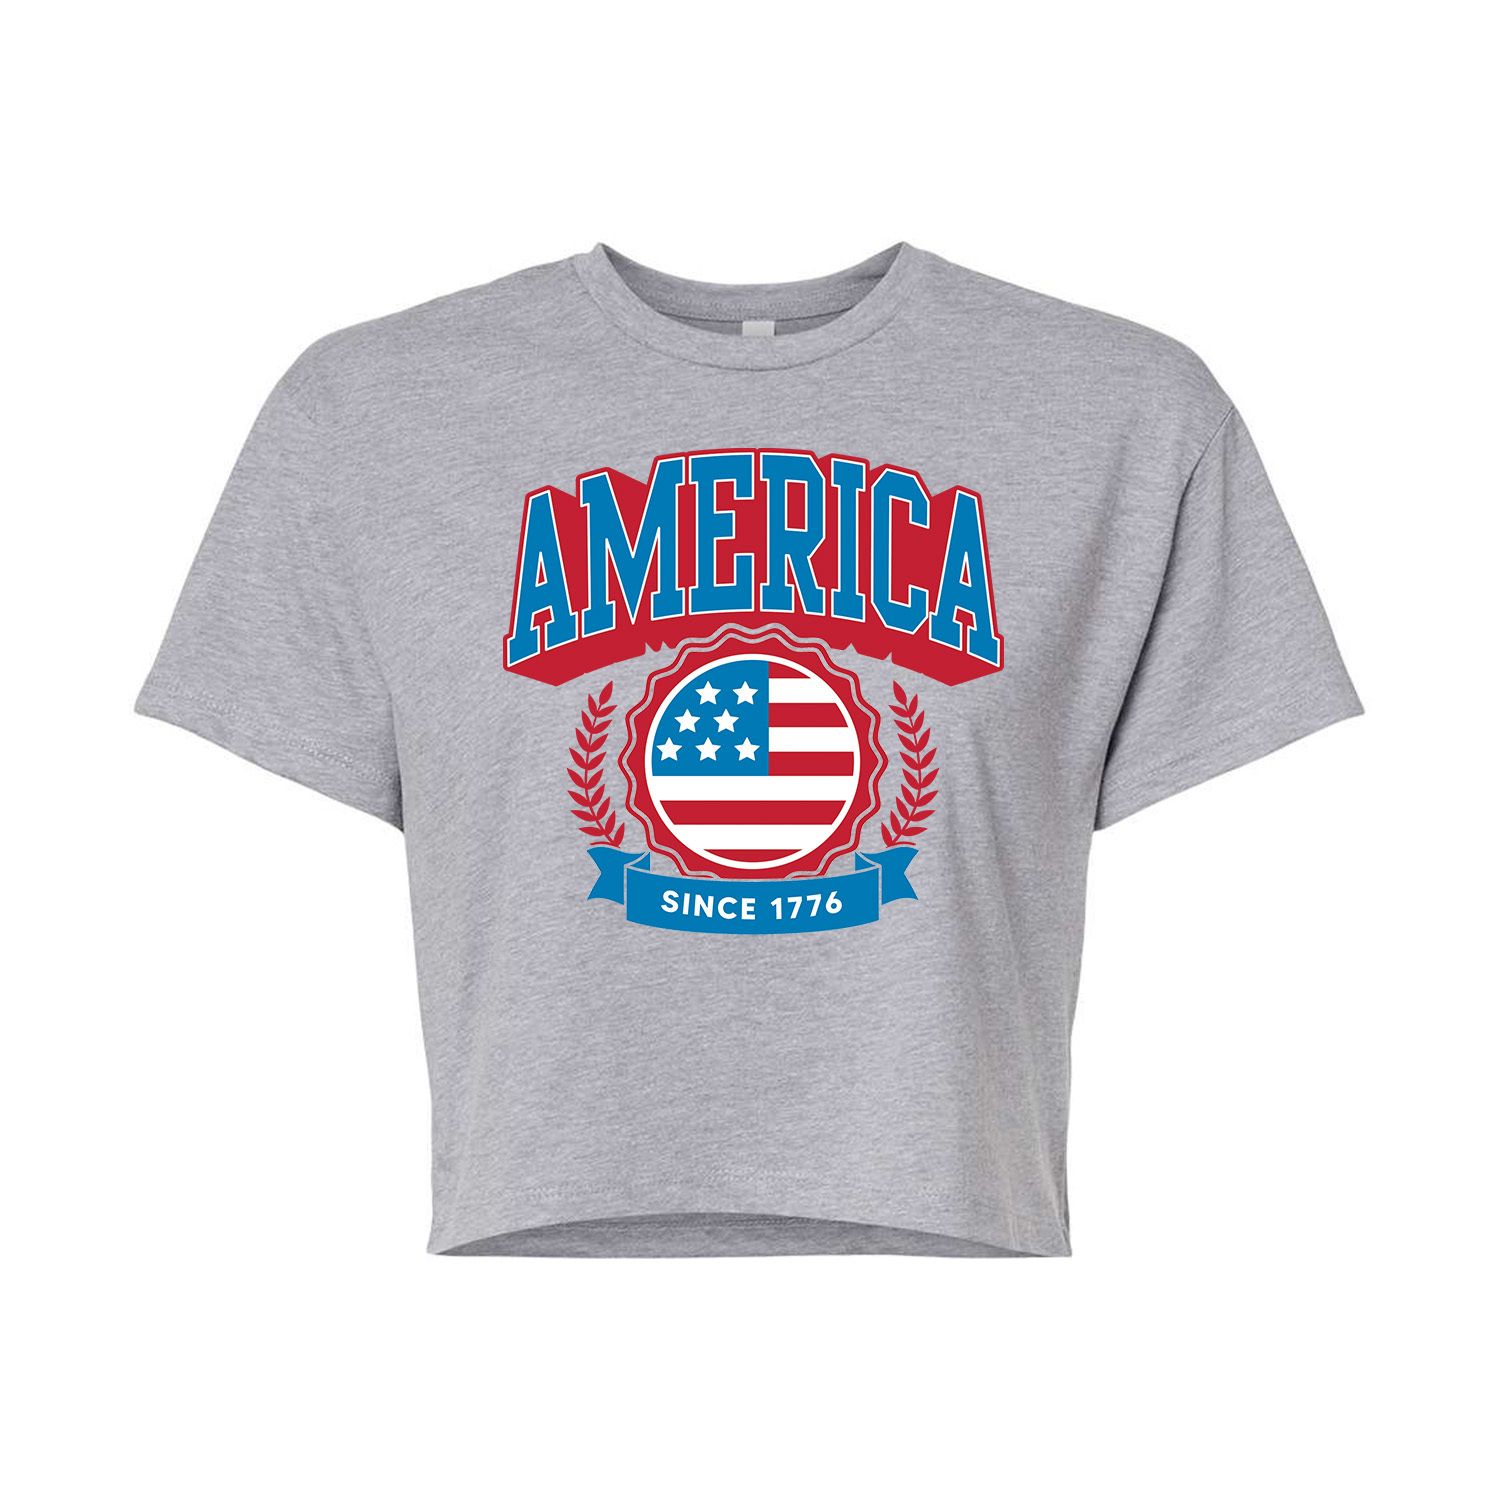 Укороченная футболка для юниоров «Америка» Licensed Character